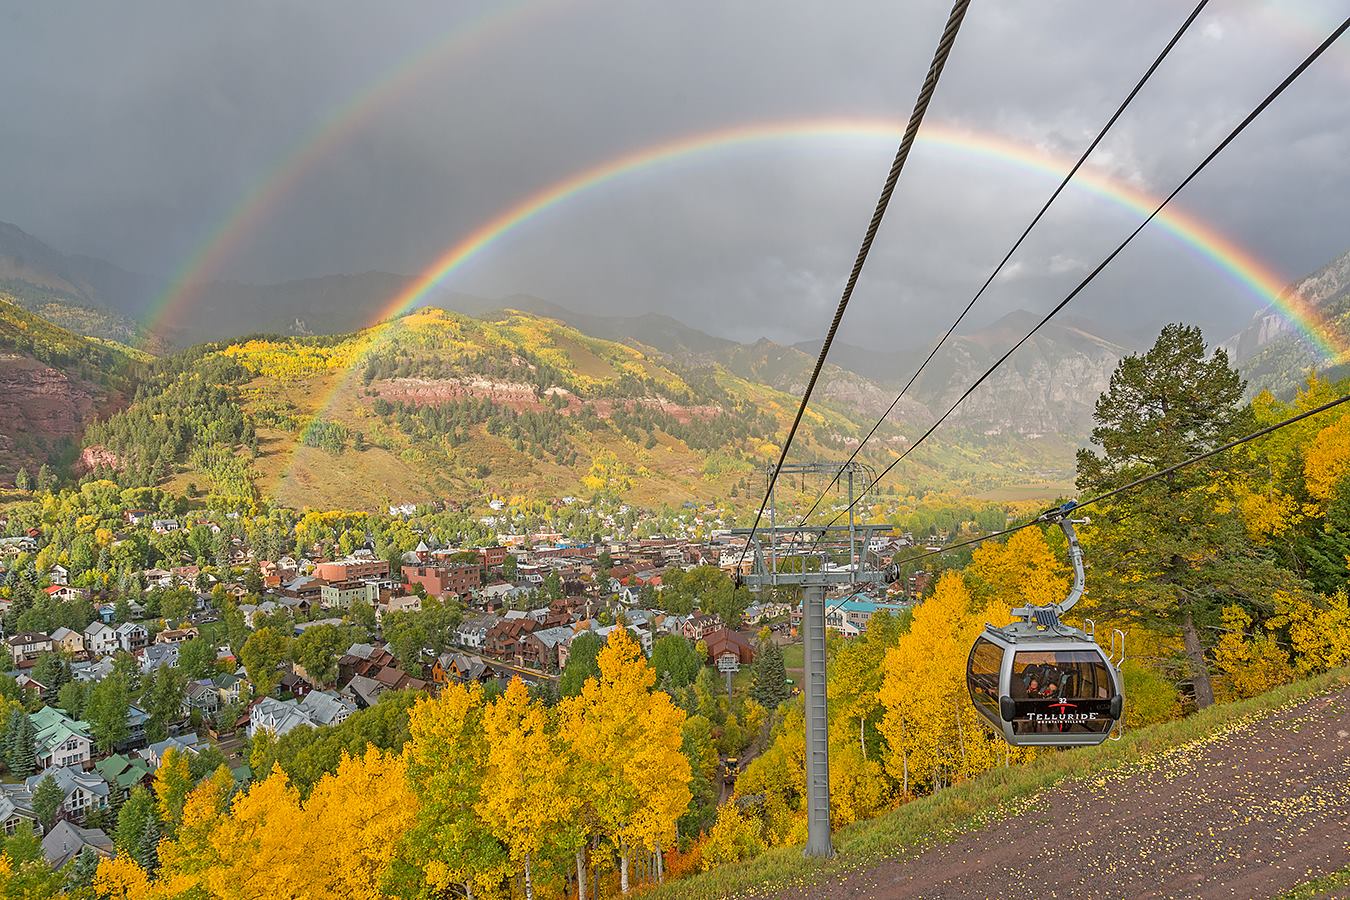 Gondola with a double rainbow